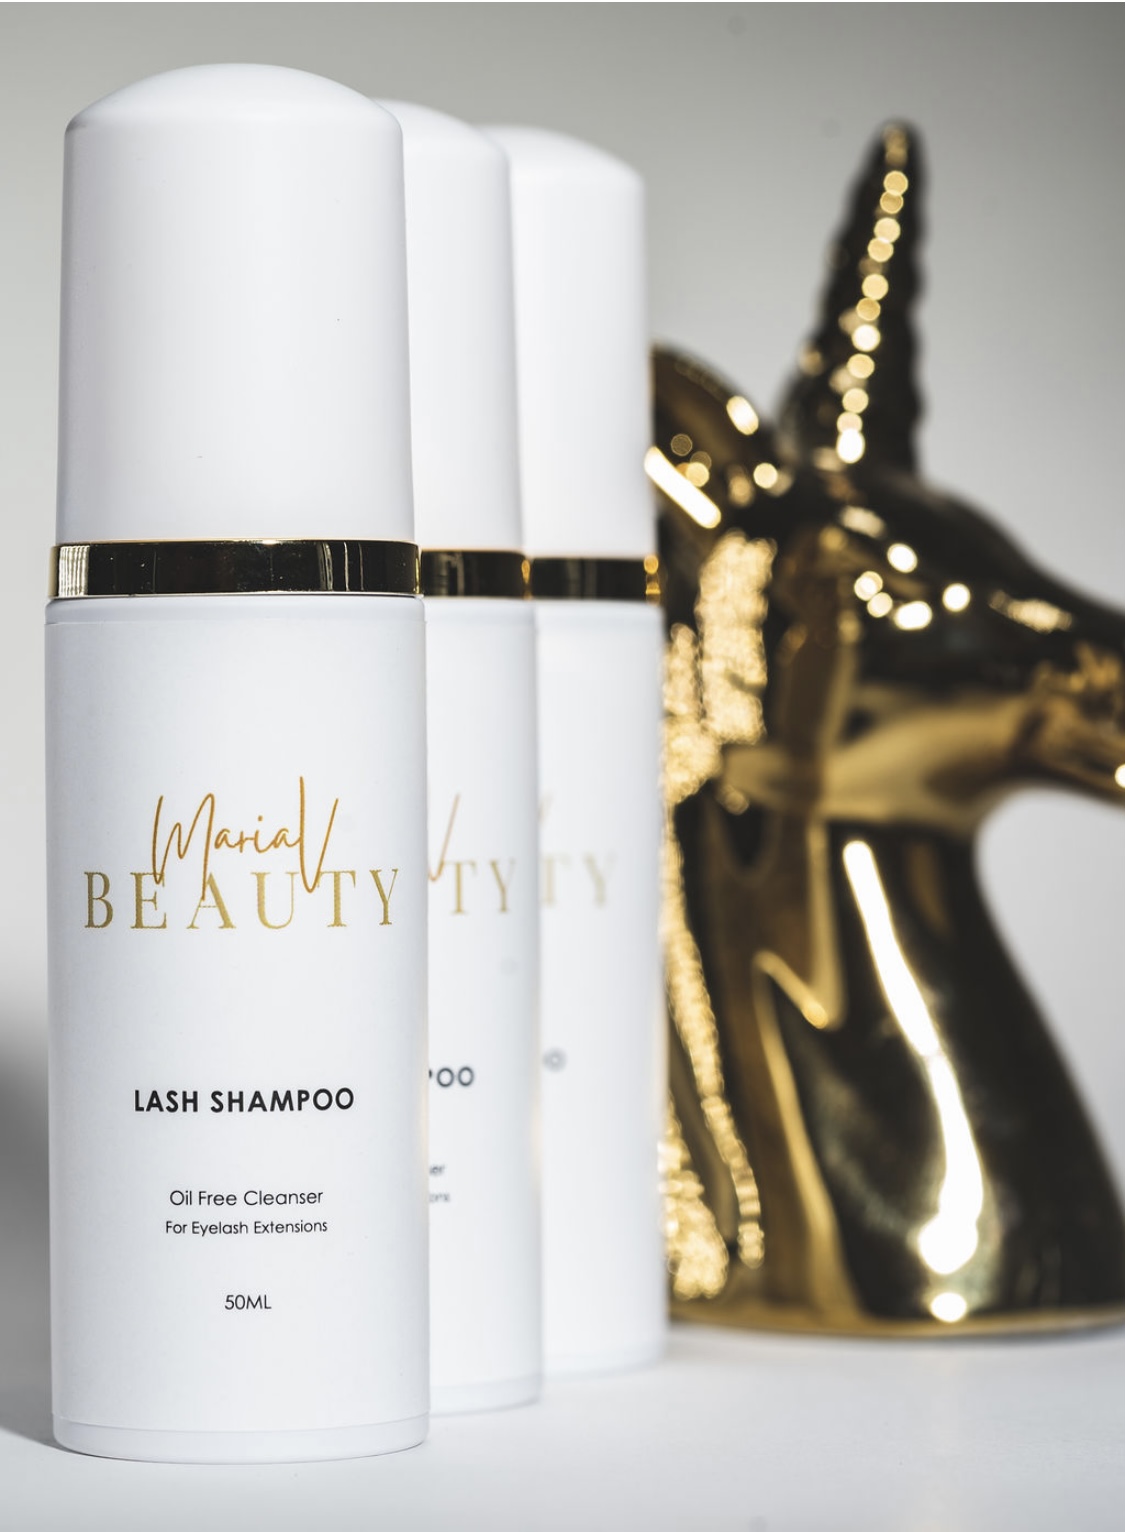 Beauty by Maria V Lash Shampoo - Product Image